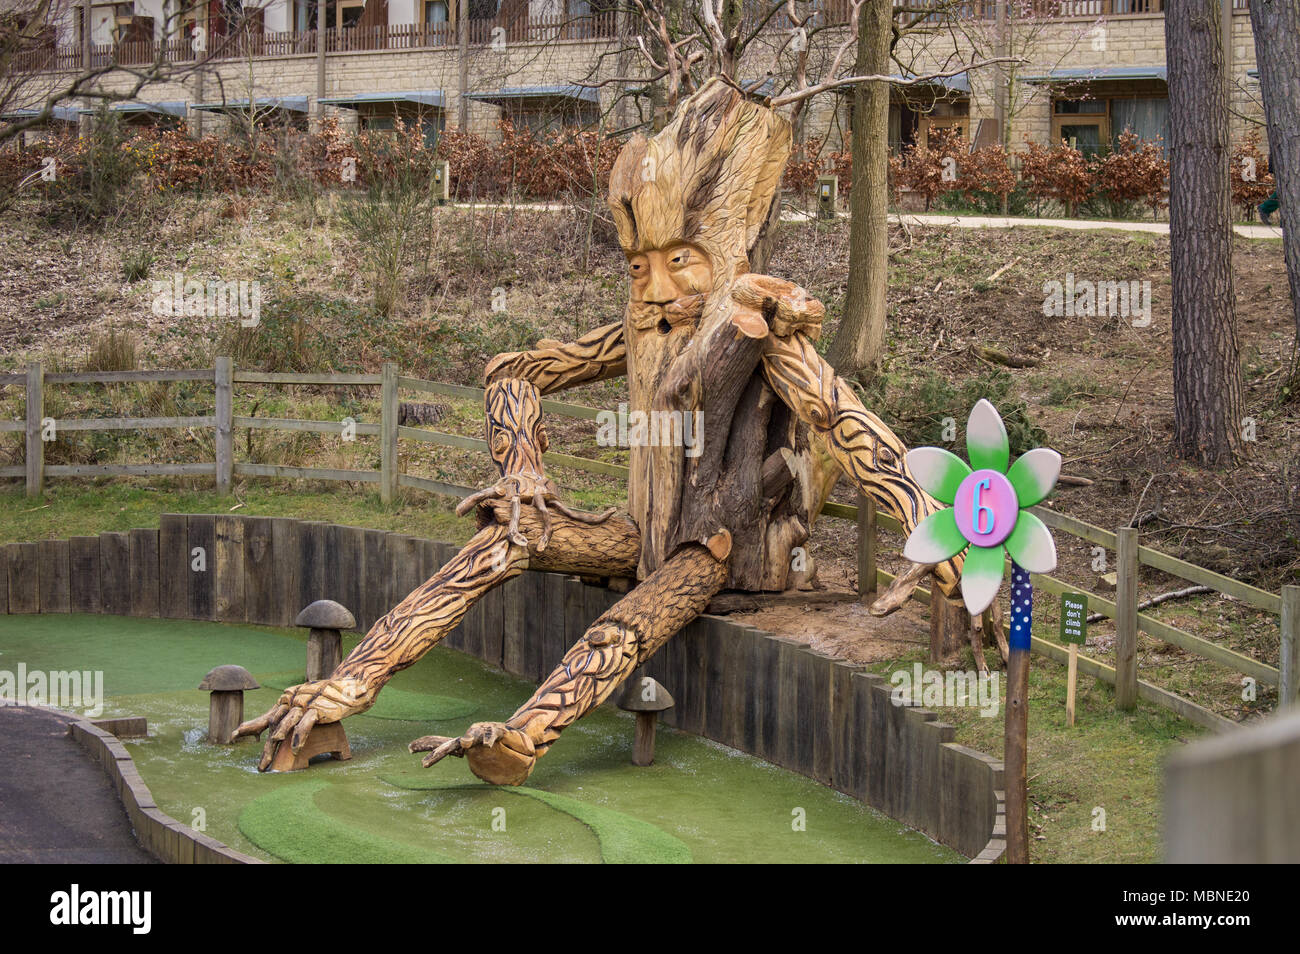 Gran escultura de un otorrinolaringólogo o árbol hombre, Center Parcs mini golf Woburn bosque Foto de stock